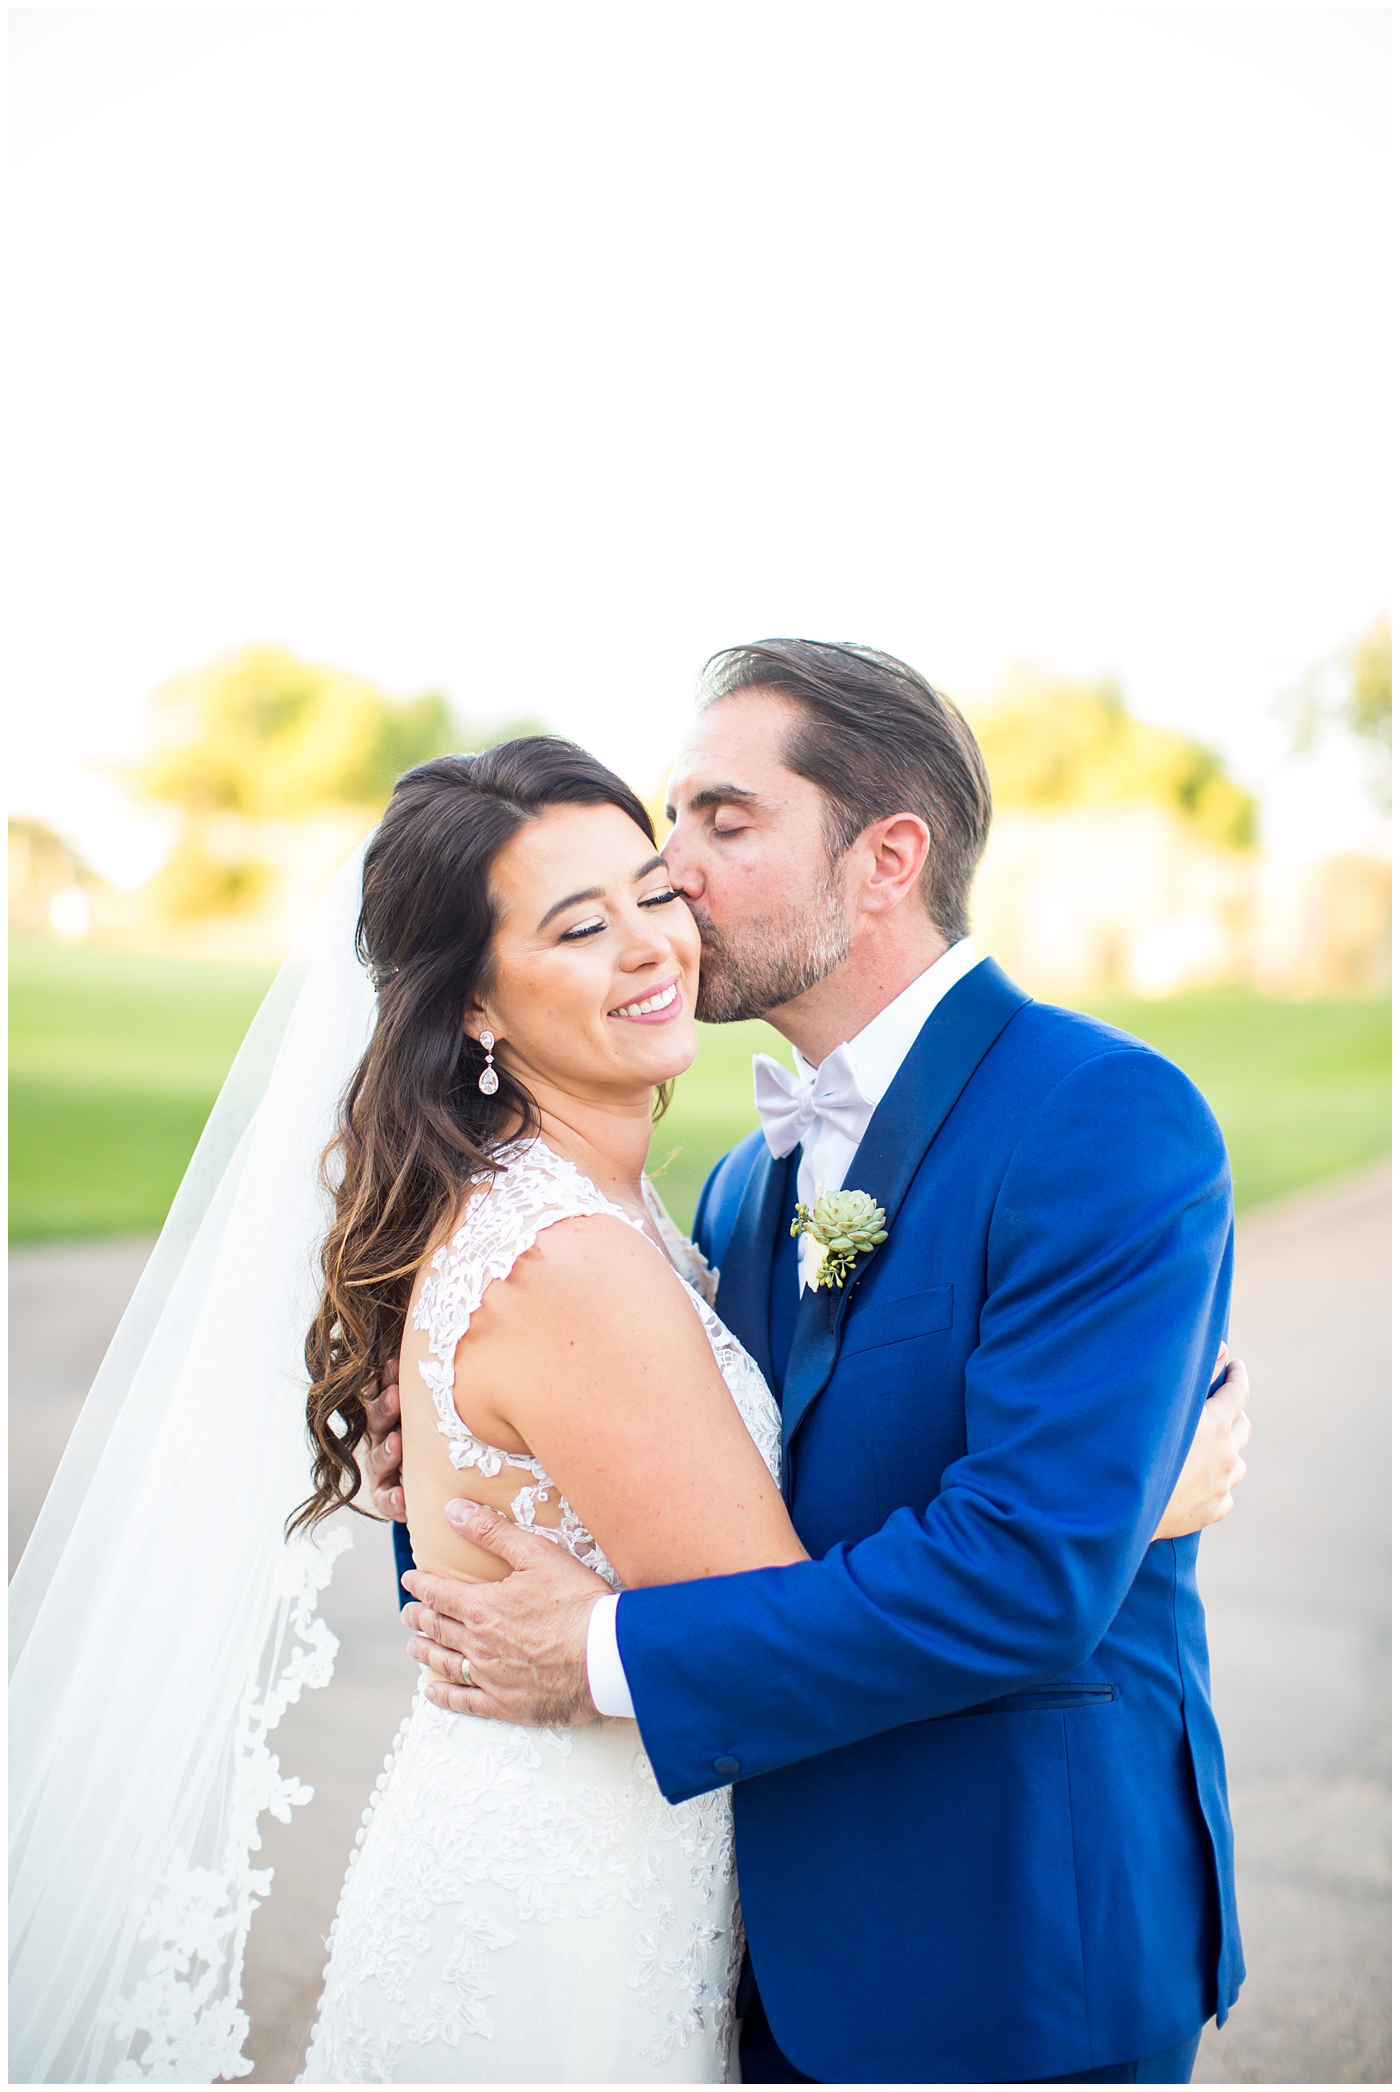 Bride in Justina Alexander dress with groom in custom blue suit kissing her cheek